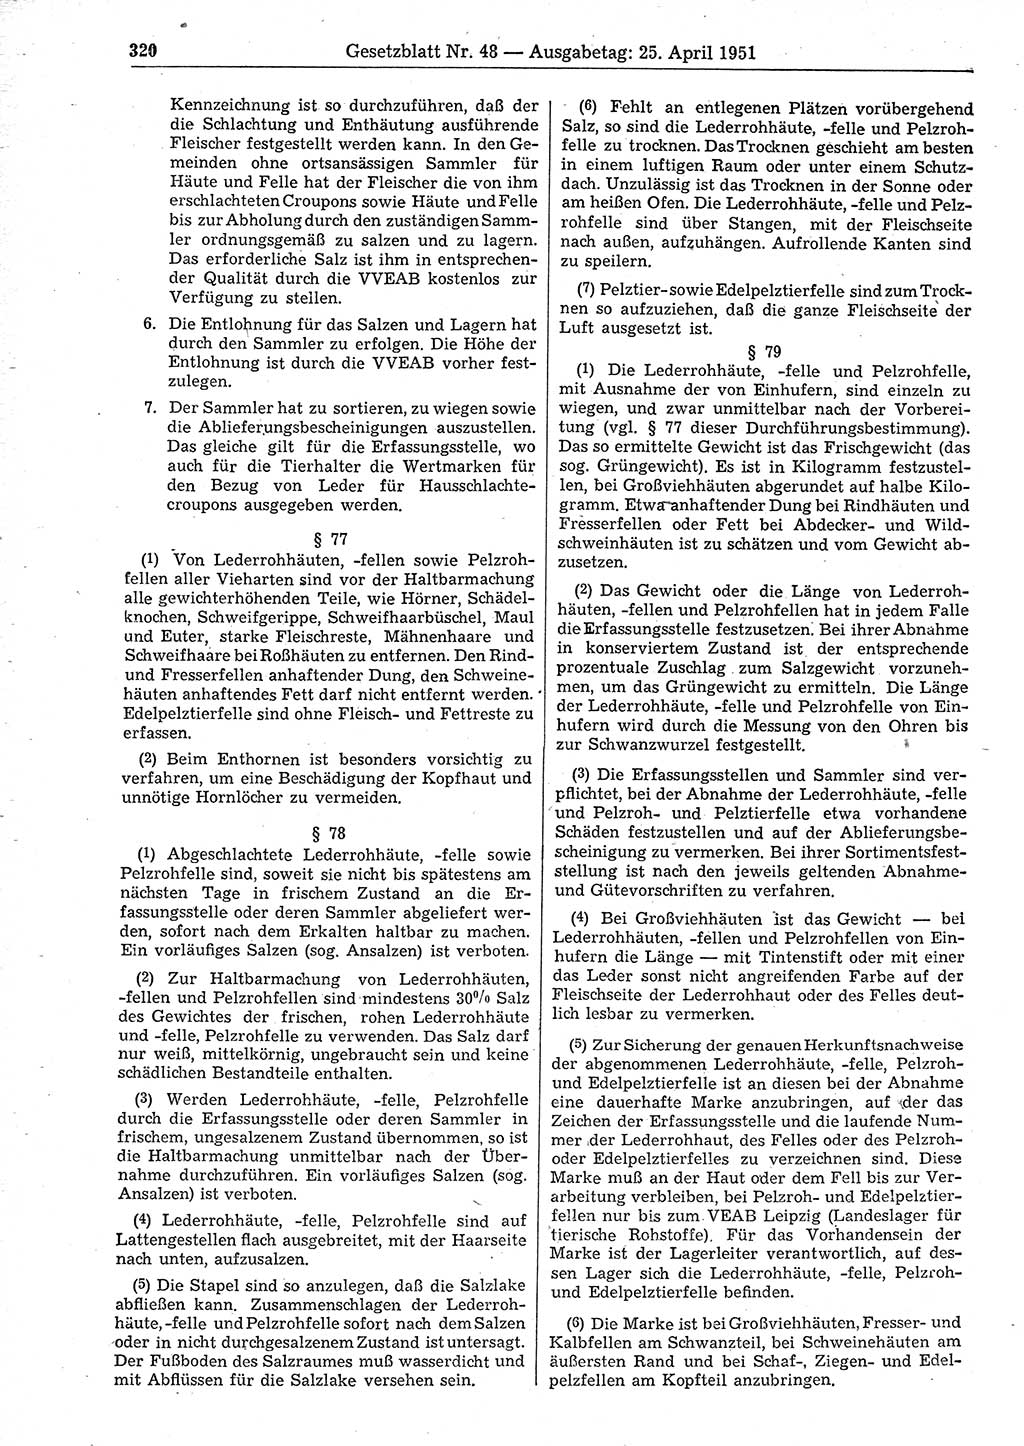 Gesetzblatt (GBl.) der Deutschen Demokratischen Republik (DDR) 1951, Seite 320 (GBl. DDR 1951, S. 320)